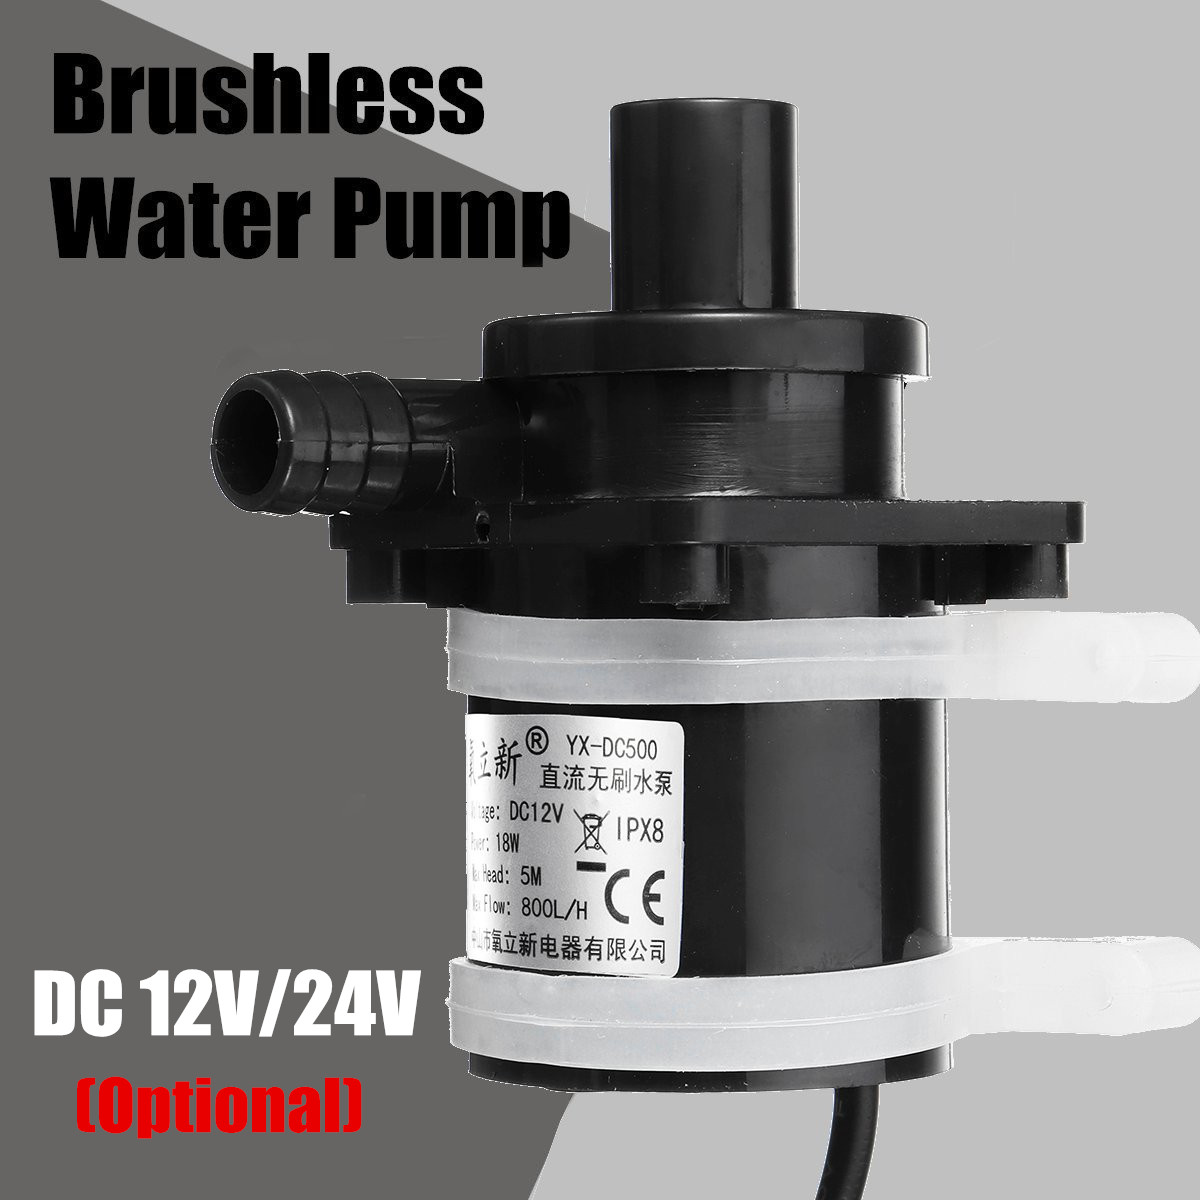 DC-12V-Brushless-Water-Pump-Submersible-Water-Pump-Micro-Brushless-Motor-Pump-Fish-Tank-Pond-Filter--1408800-1